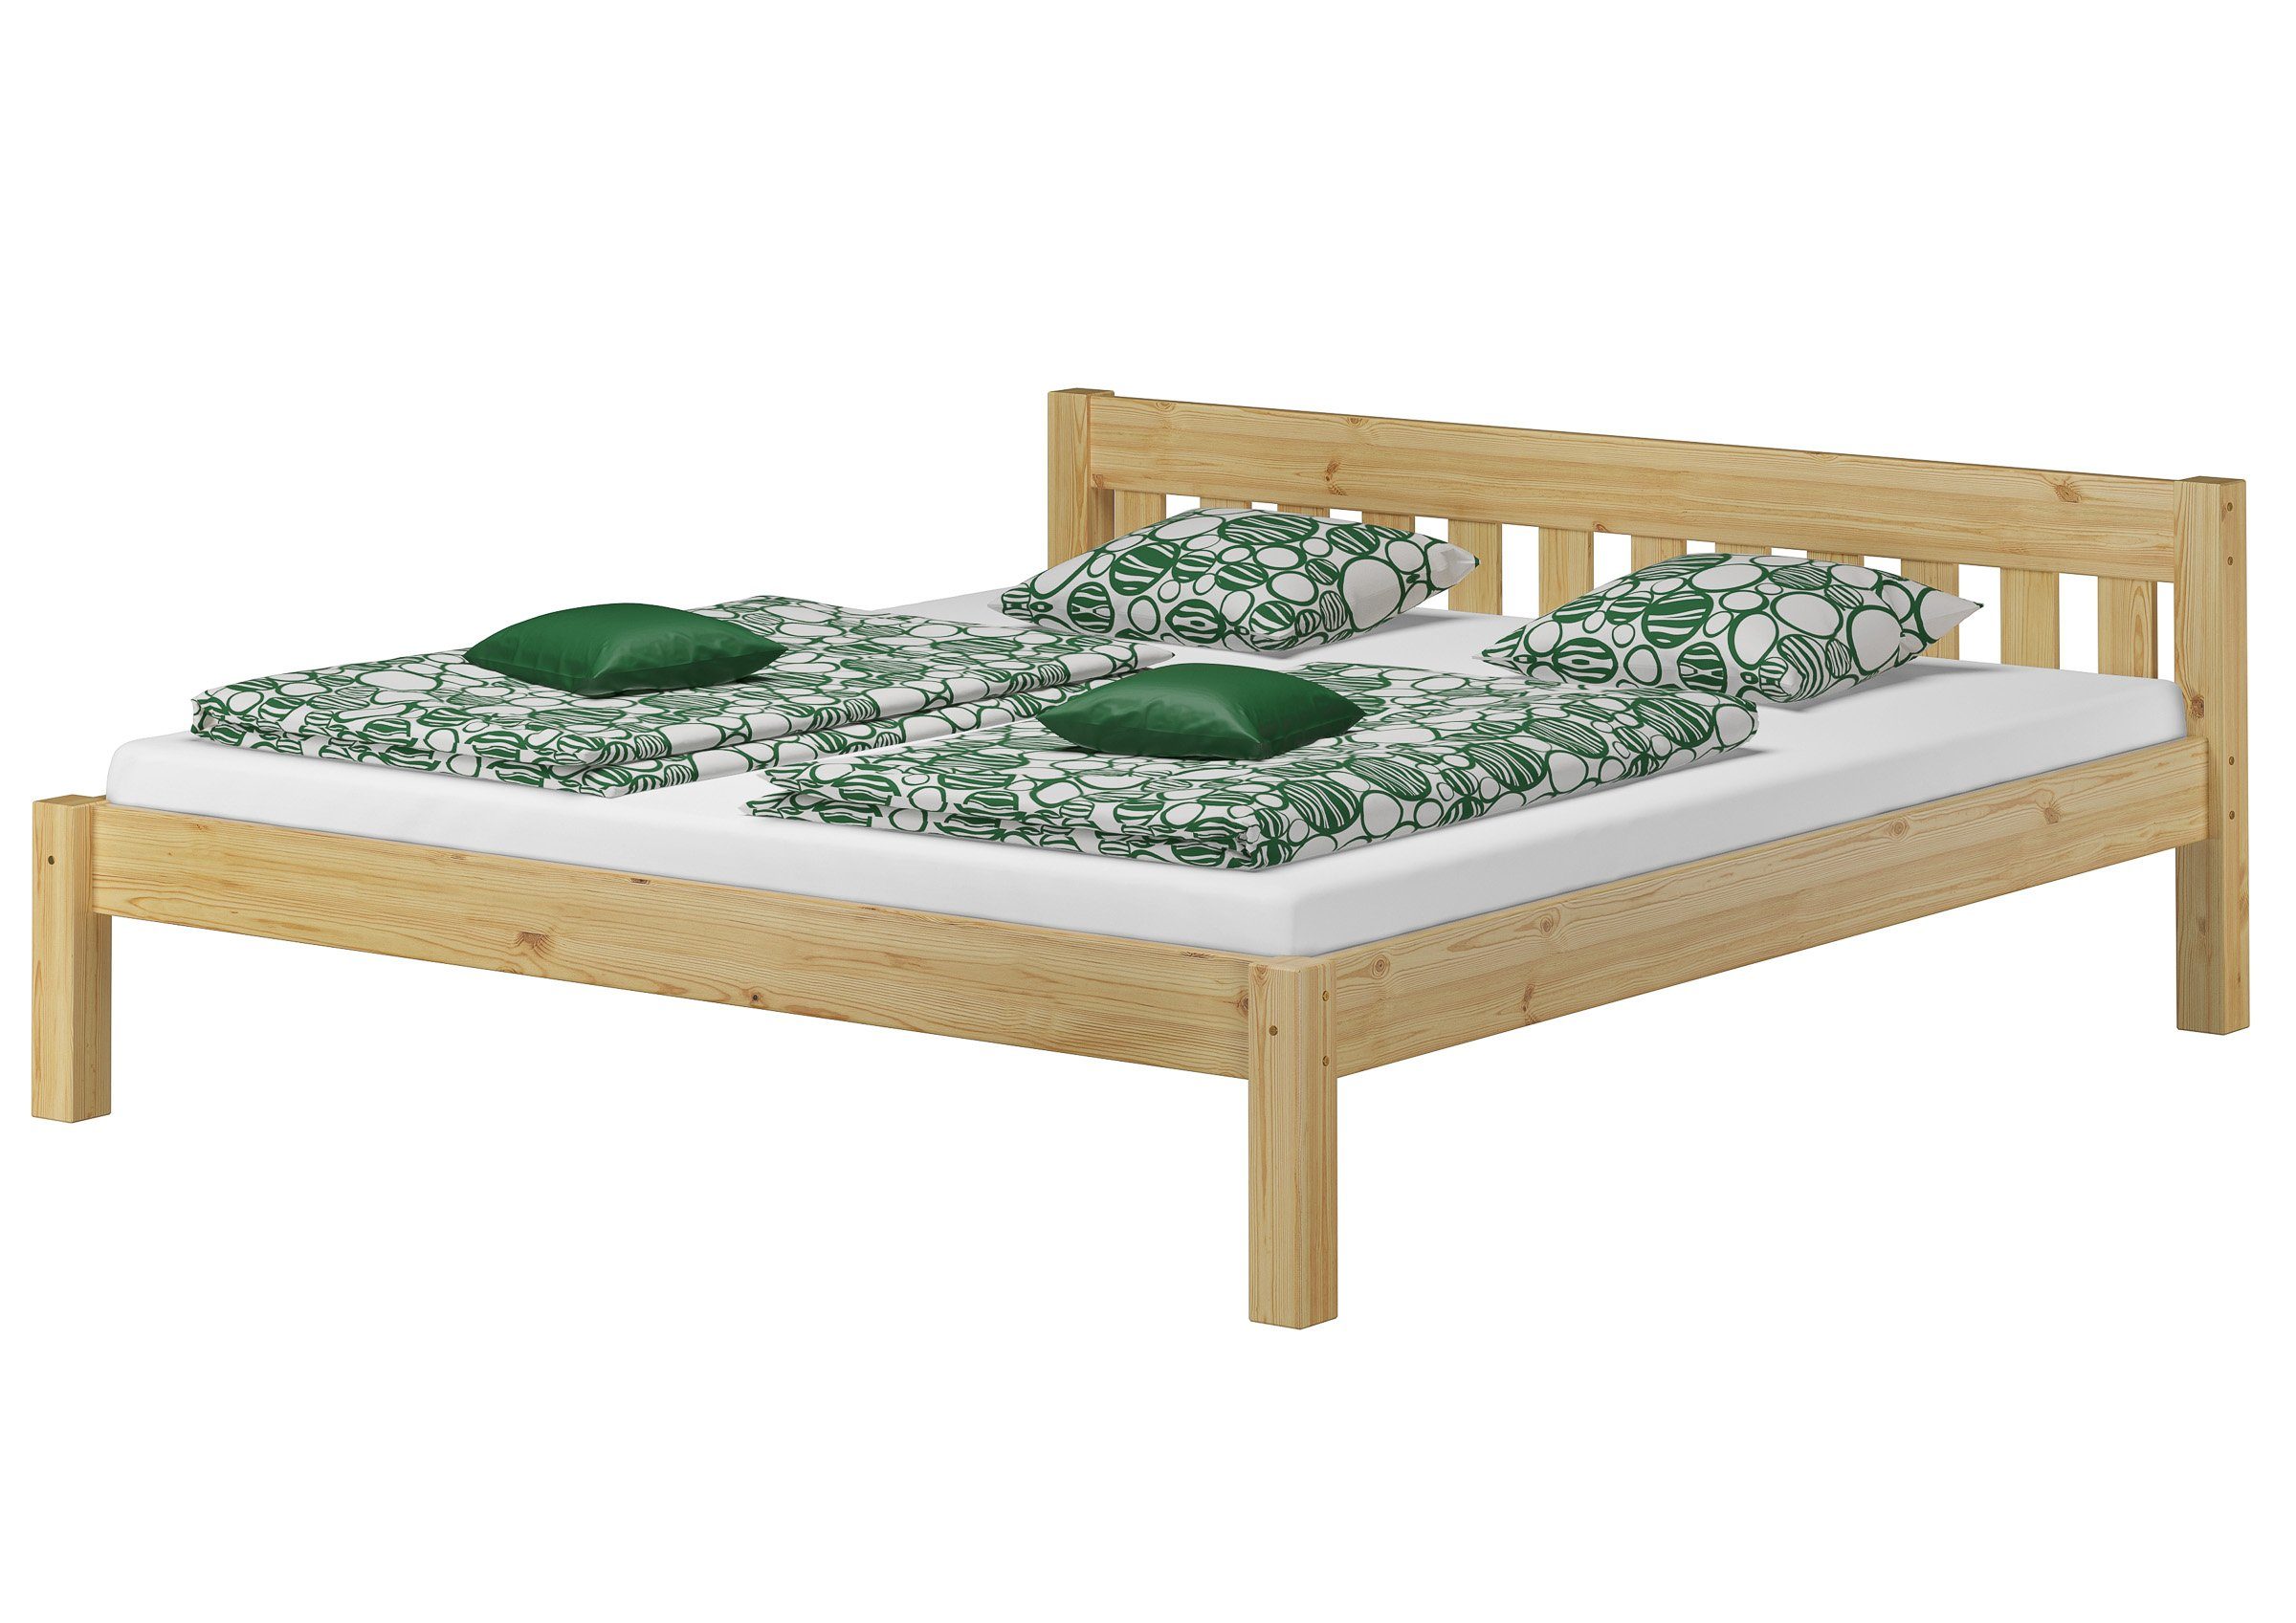 Kieferfarblos Landhausstil Doppelbett Matratze, mit ERST-HOLZ lackiert und Bett Rost 180x200